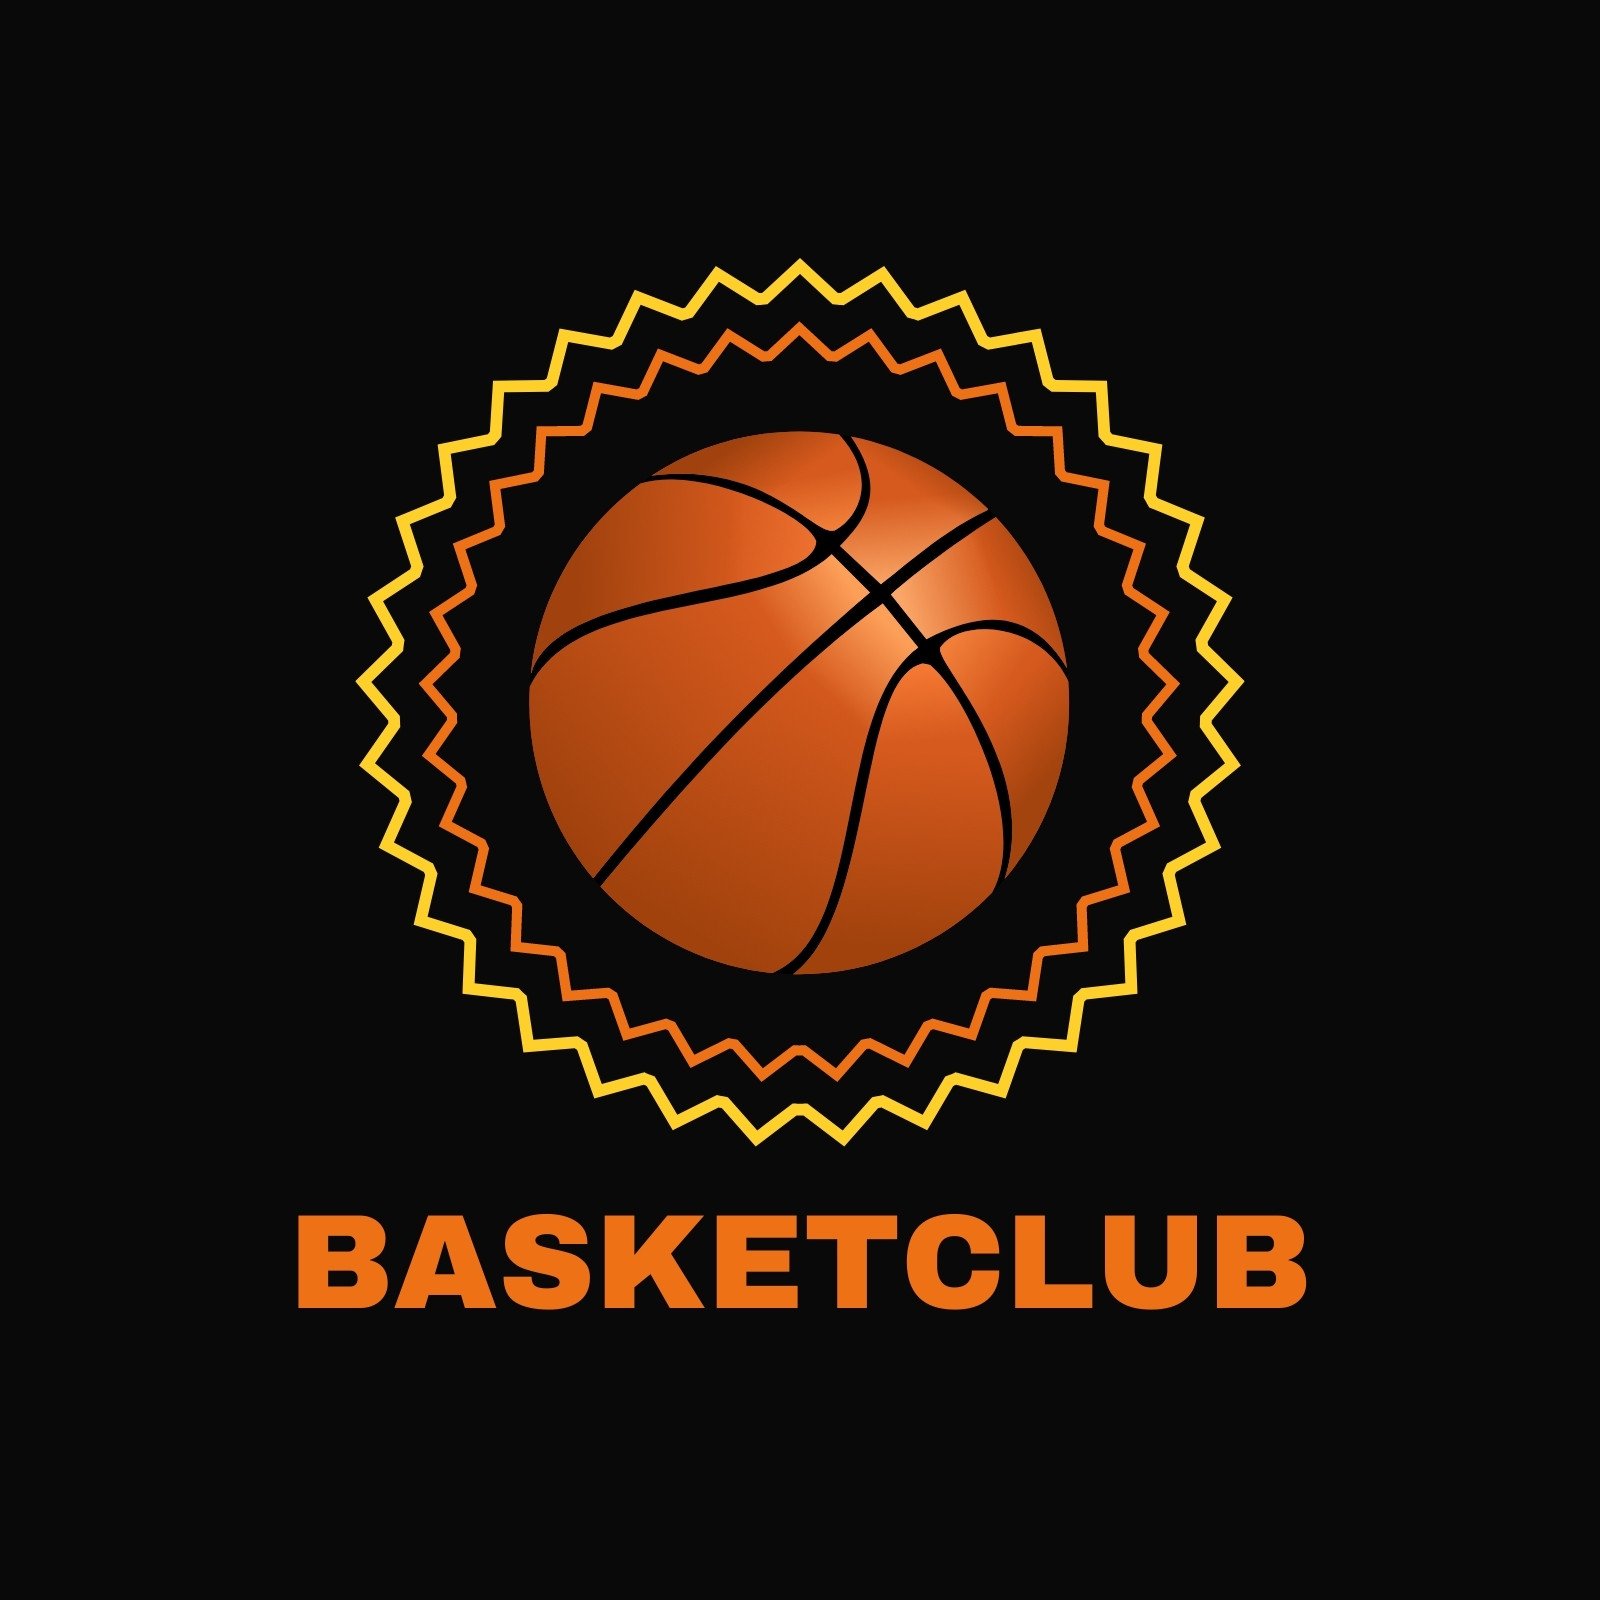 Plantillas para logos de básquetbol personalizables | Canva